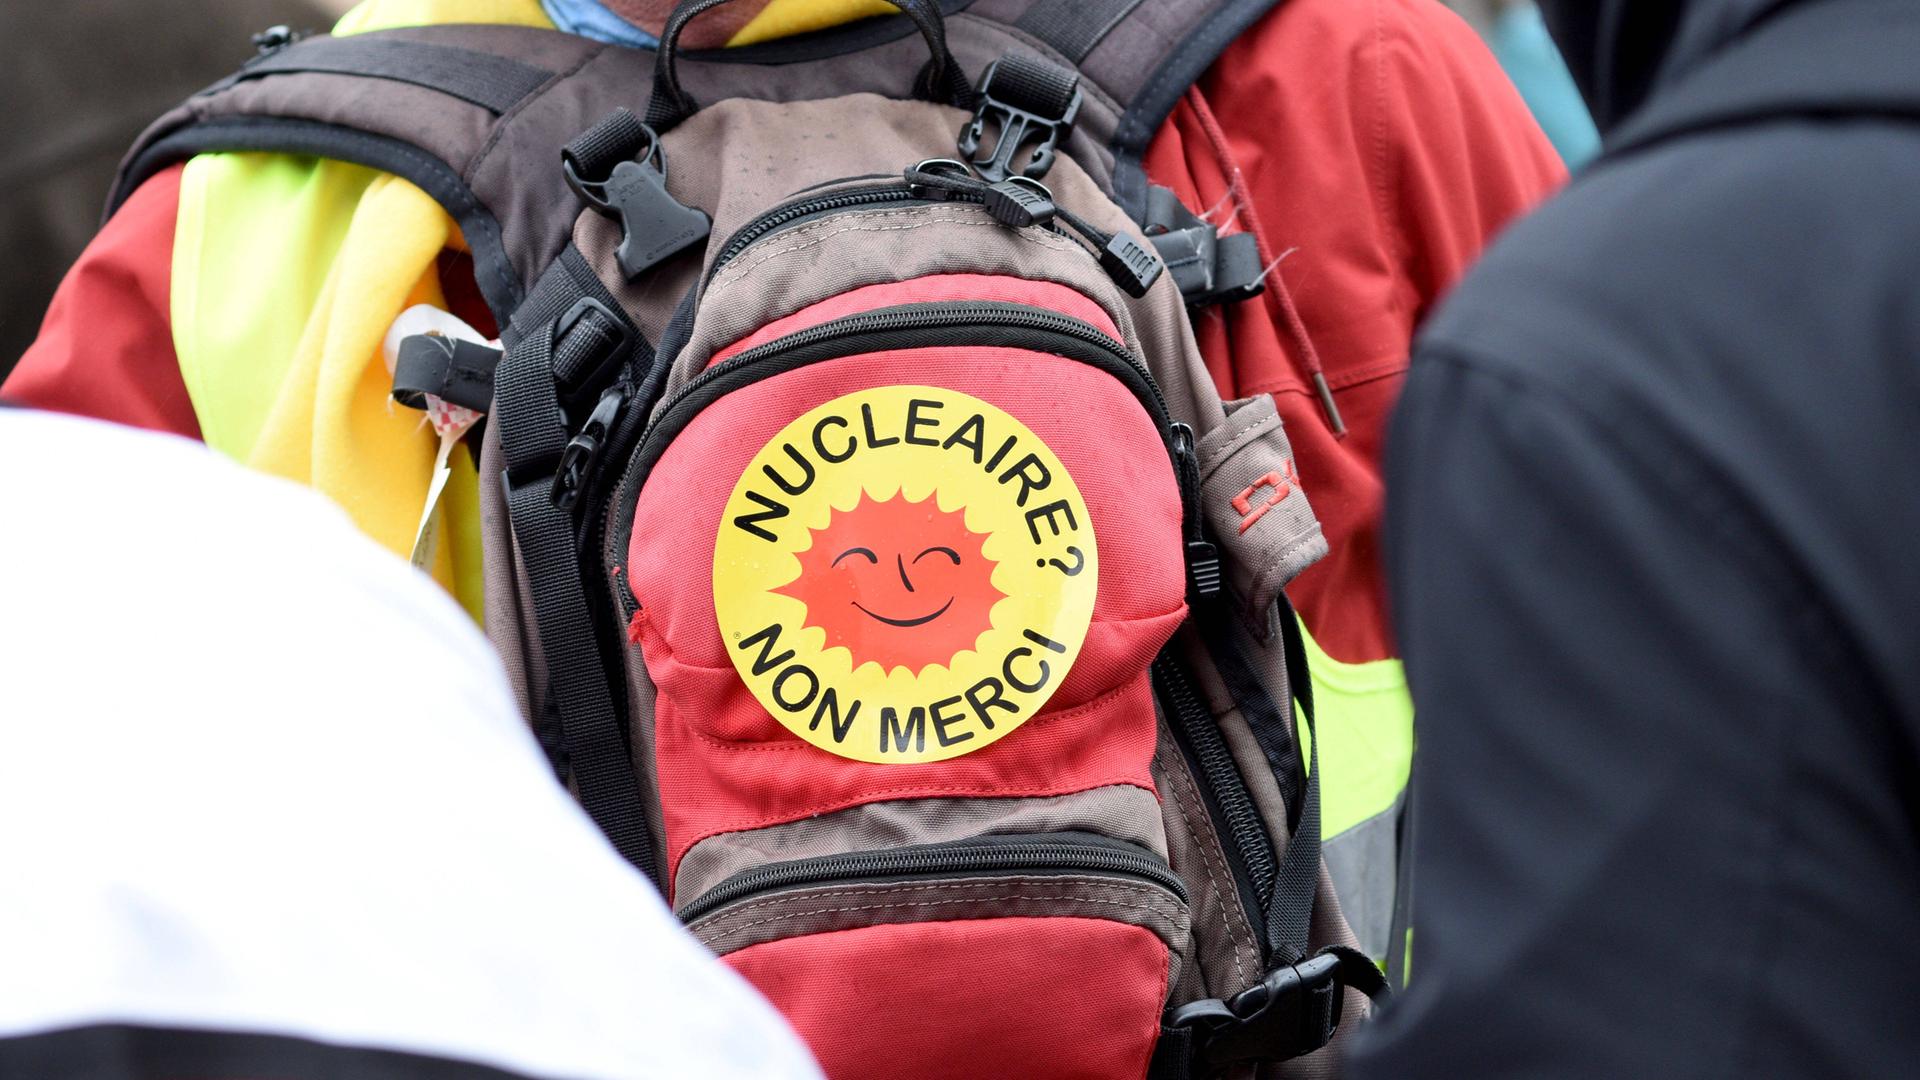 Anti-Atomkraft-Demonstration in Strasbourg im Elsaß in Frankreich am 8.12.2018. Im Bild: Demonstrant trägt Rucksack mit einem Aufkleber: Nucleaire - Non Merci - Atomkraft - Nein danke". 